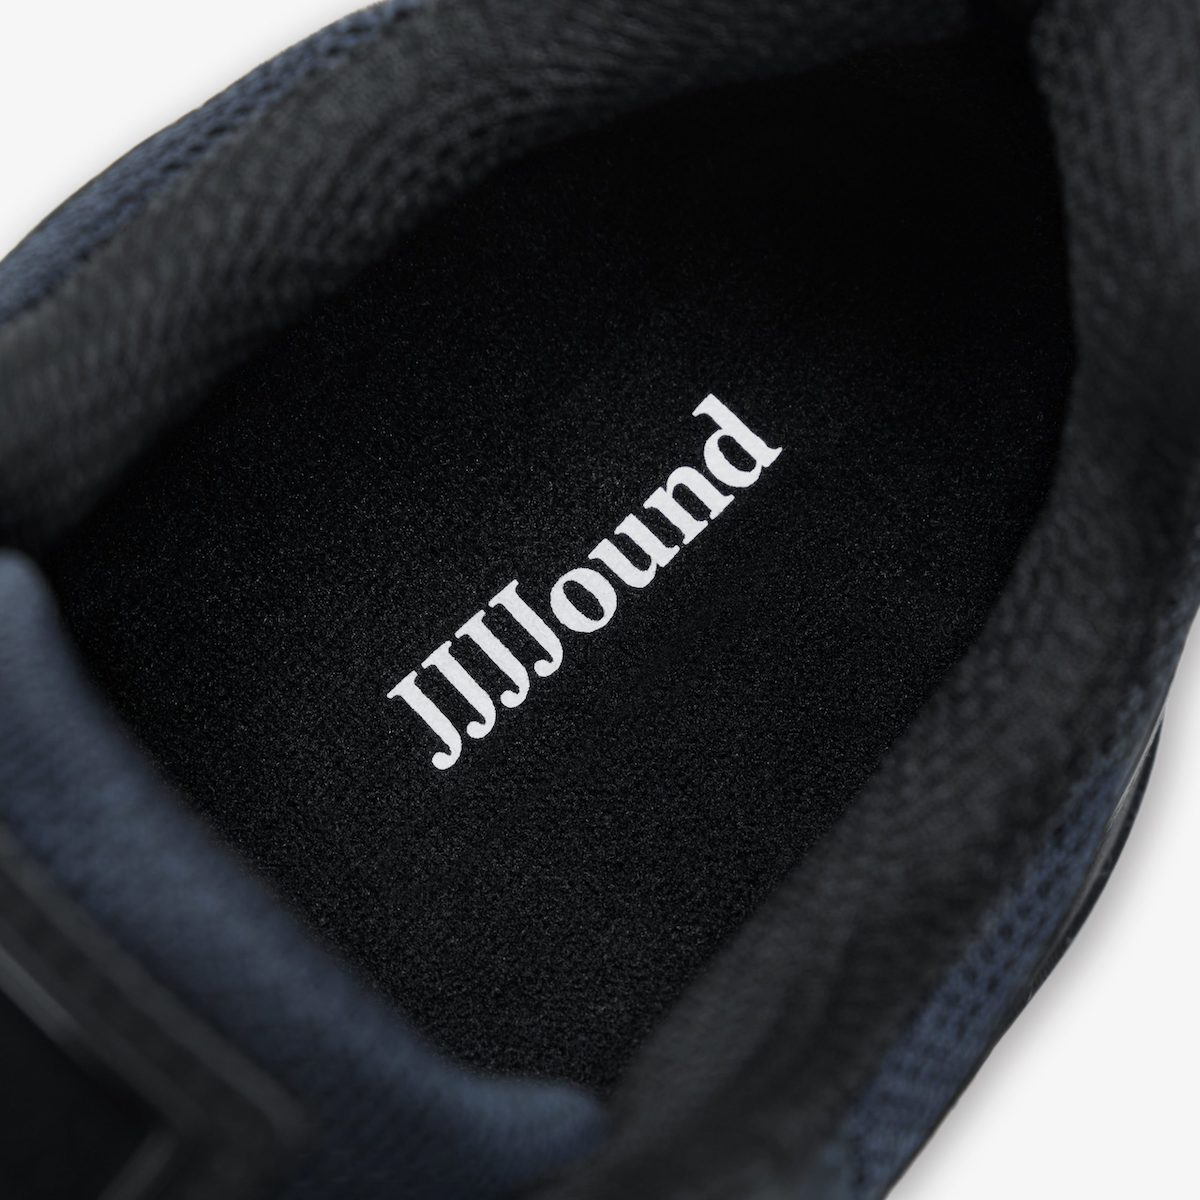 JJJJound x New Balance 990v4